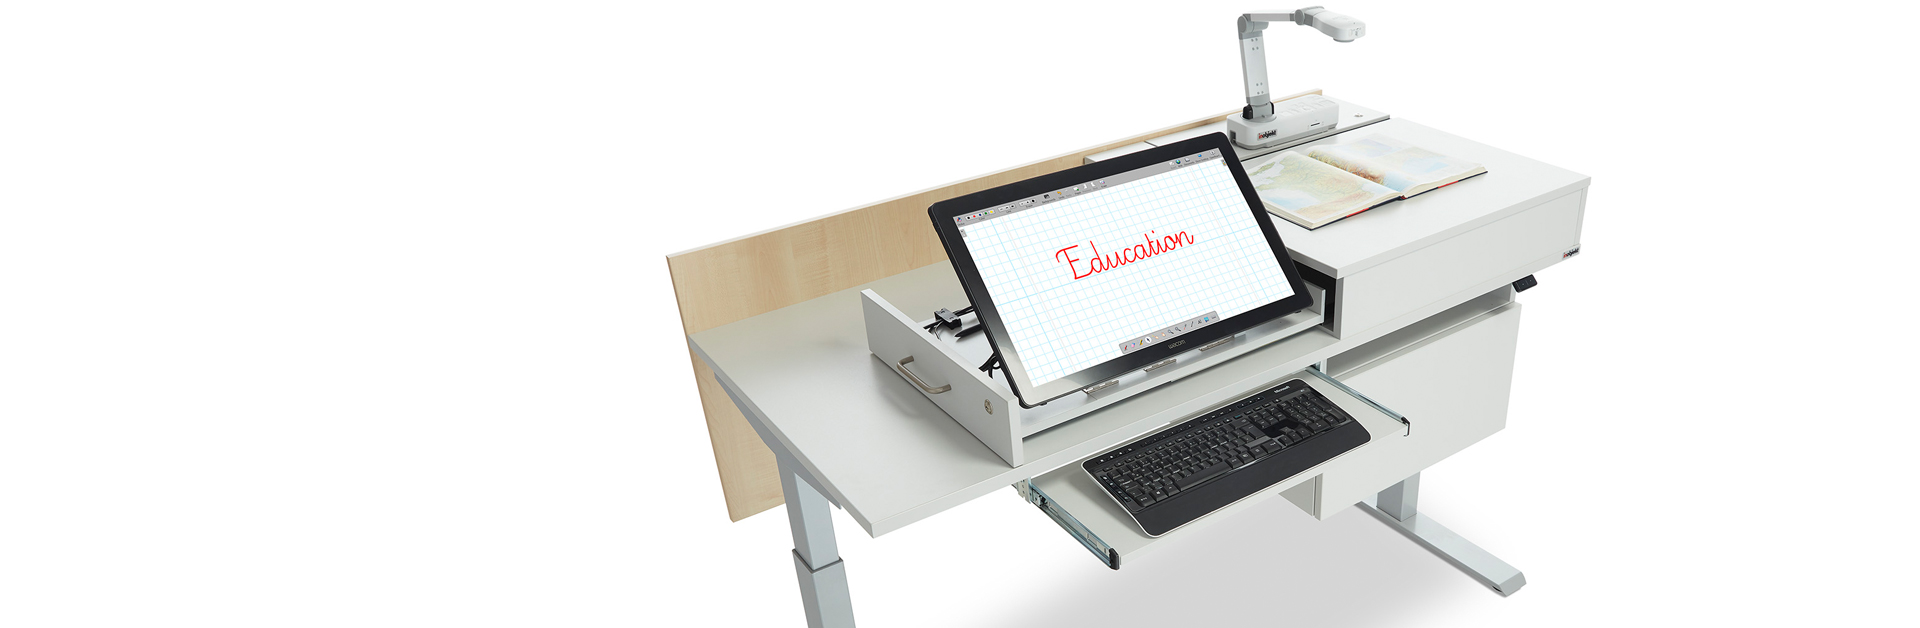 Header: Lehrertisch ino.vation mit interaktivem Display, Dokumentenkamera mit Buch sowie Tastaturauszug